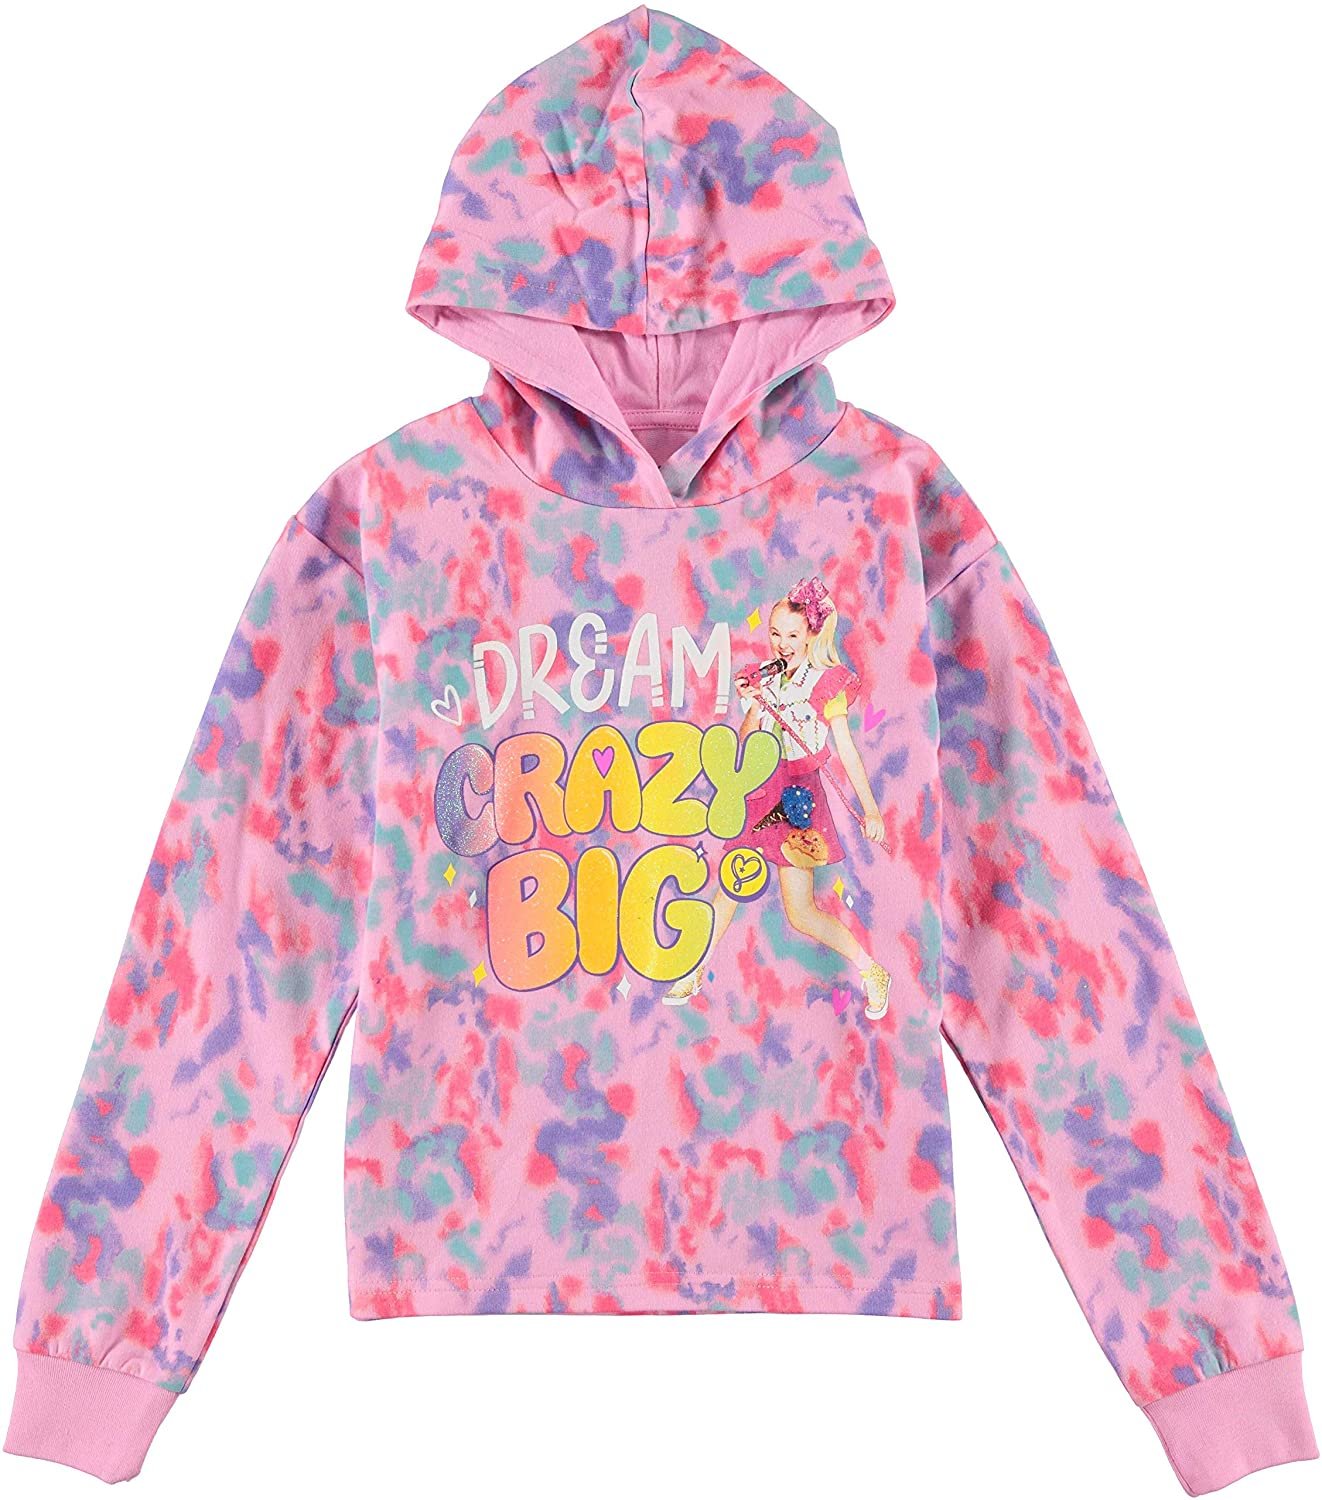 JoJo Siwa Girls Sweatshirt Hoodie and Jogger Clothing Set, Pink Sizes 4-20